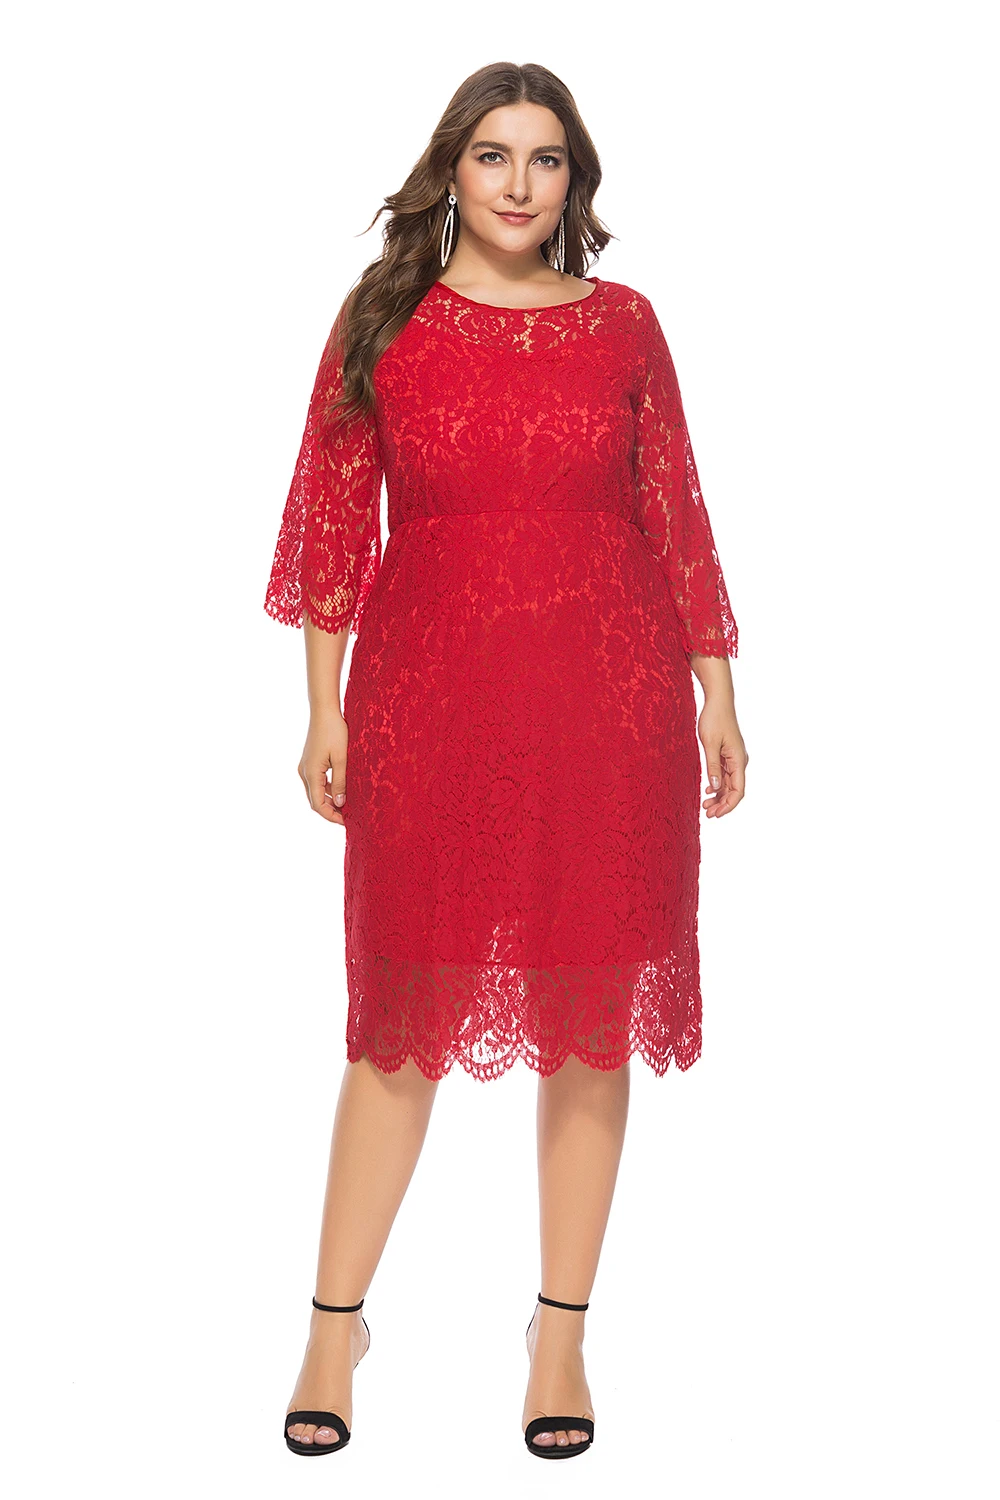 Недорогие красные плюс Размеры вечернее платье Элегантный Совок шеи Кружева Короткие вечерние платья праздничное платье халат De Soiree 2019